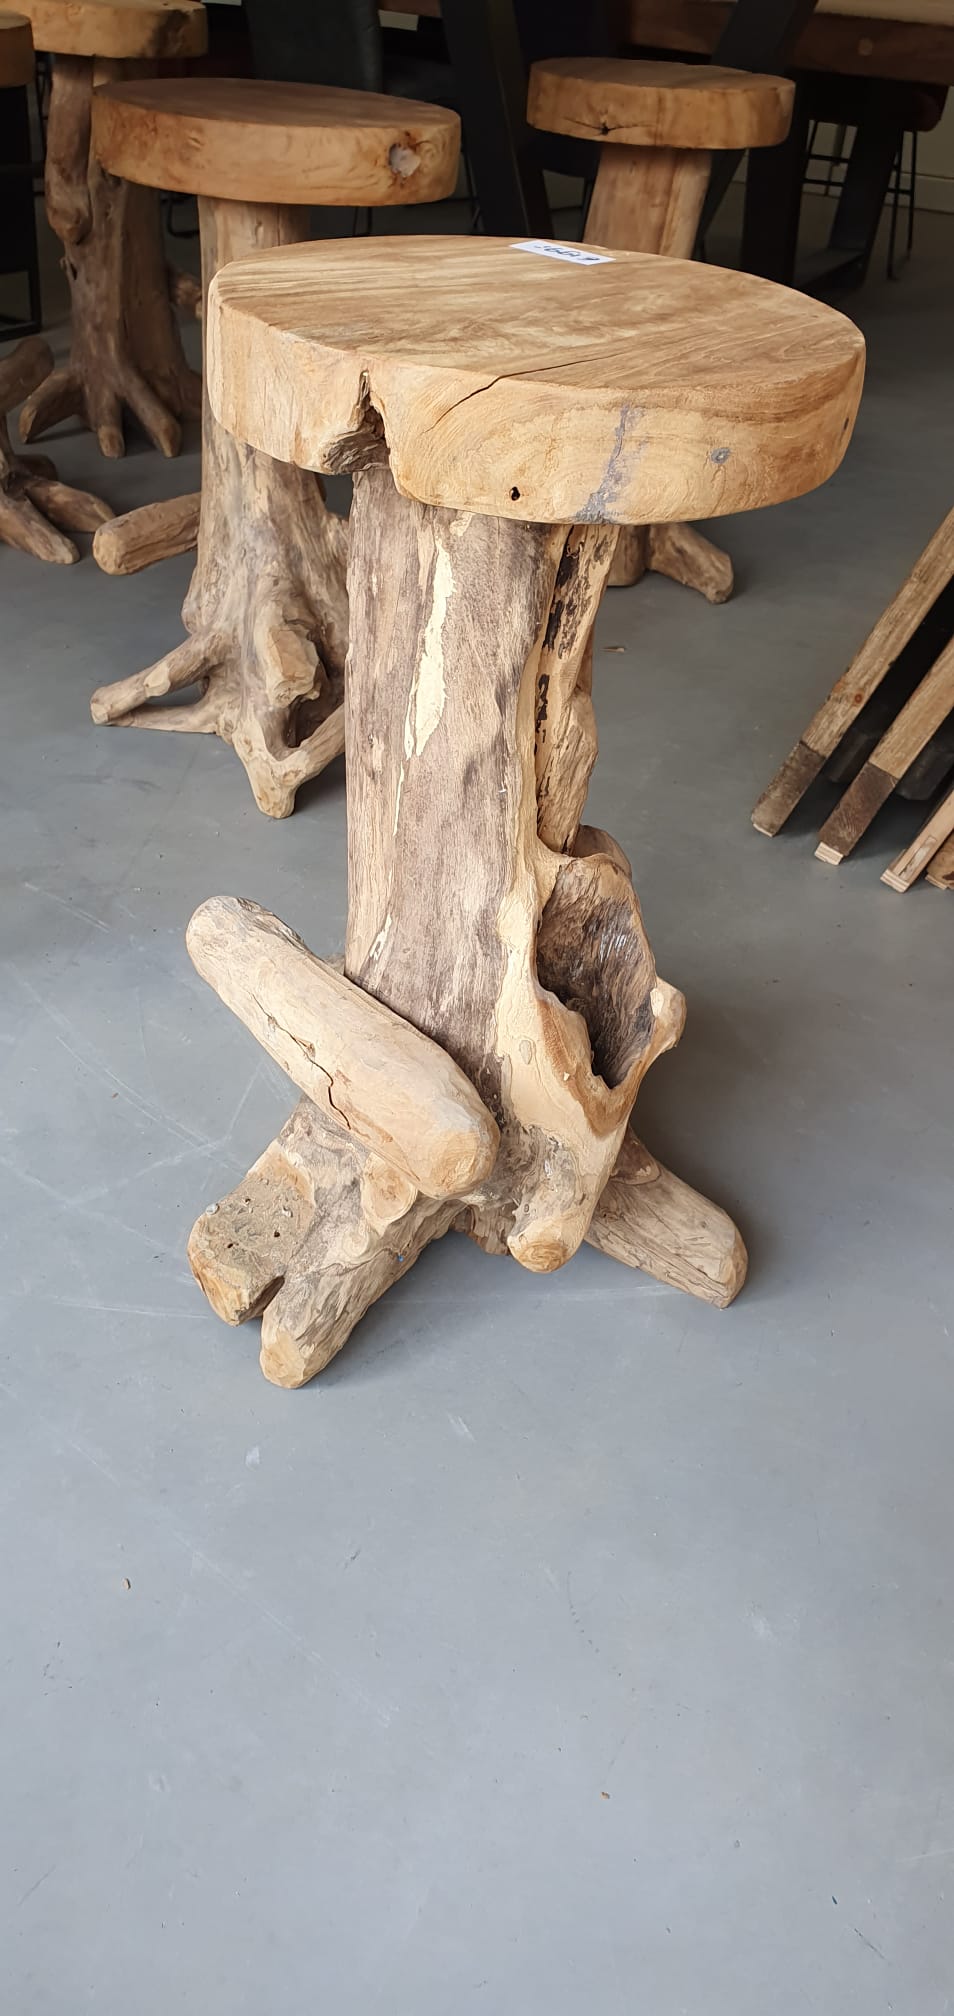 Gespierd Arctic Razernij Teak houten barkrukken – Wortel hout – Story Landelijk Wonen